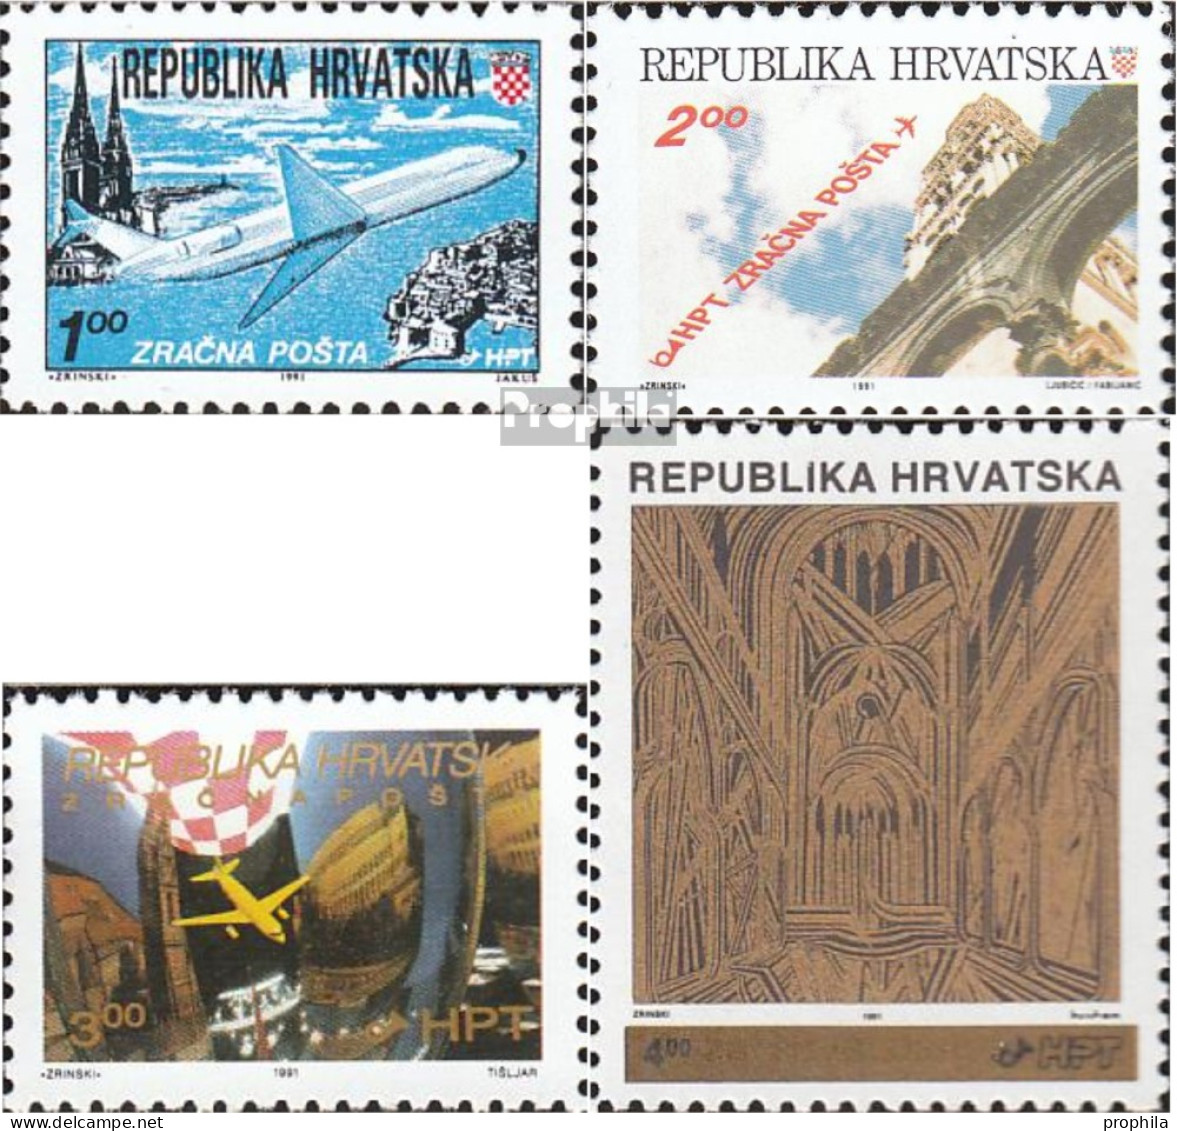 Kroatien 179A,180A A,181,182A (kompl.Ausg.) Postfrisch 1991 Flugpost, Aufdruckausgabe - Croatia